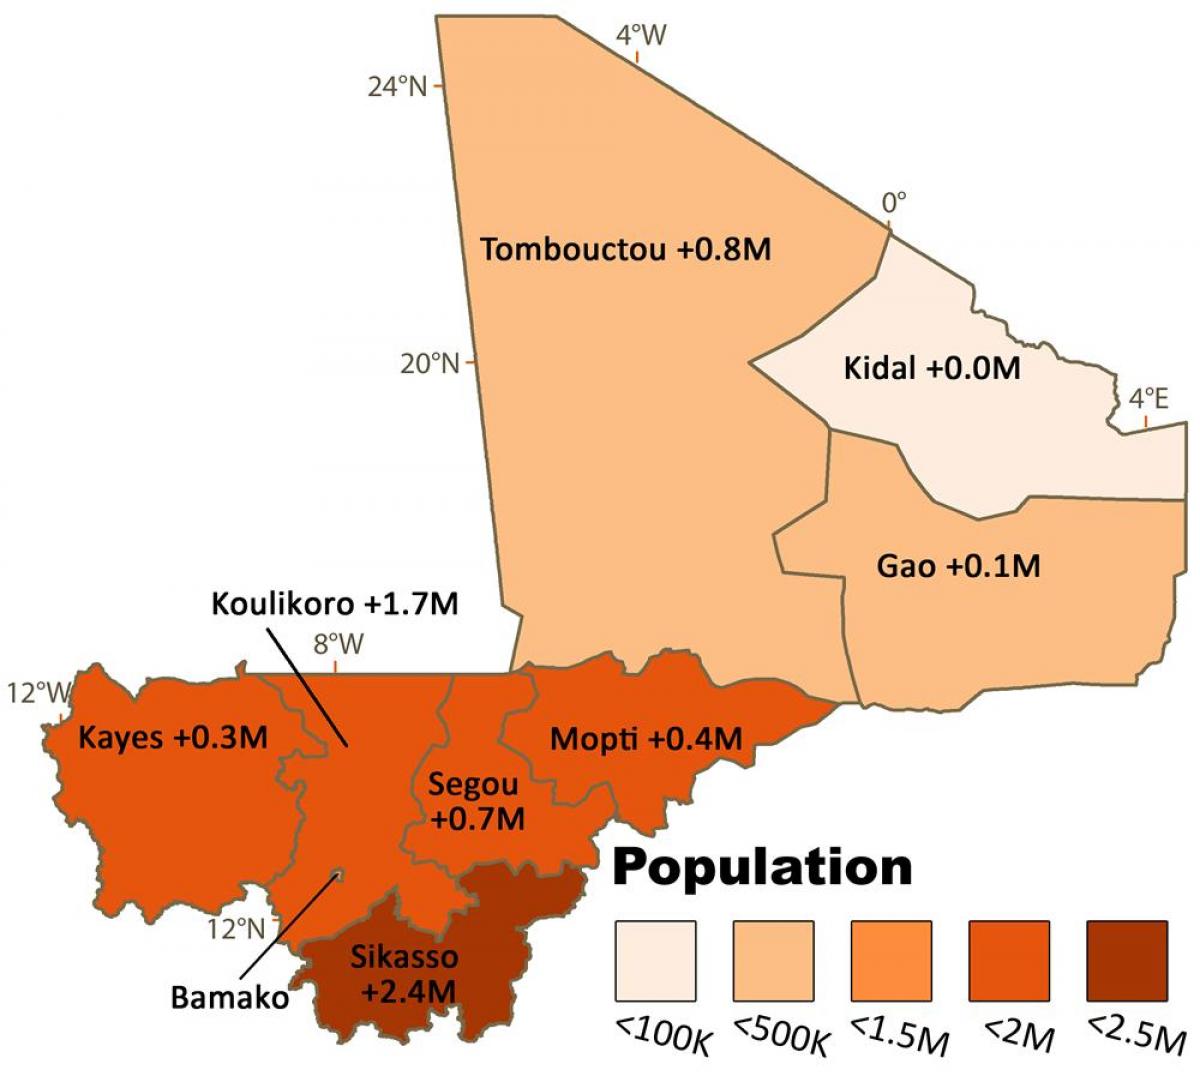 Zemljevid Mali prebivalstva